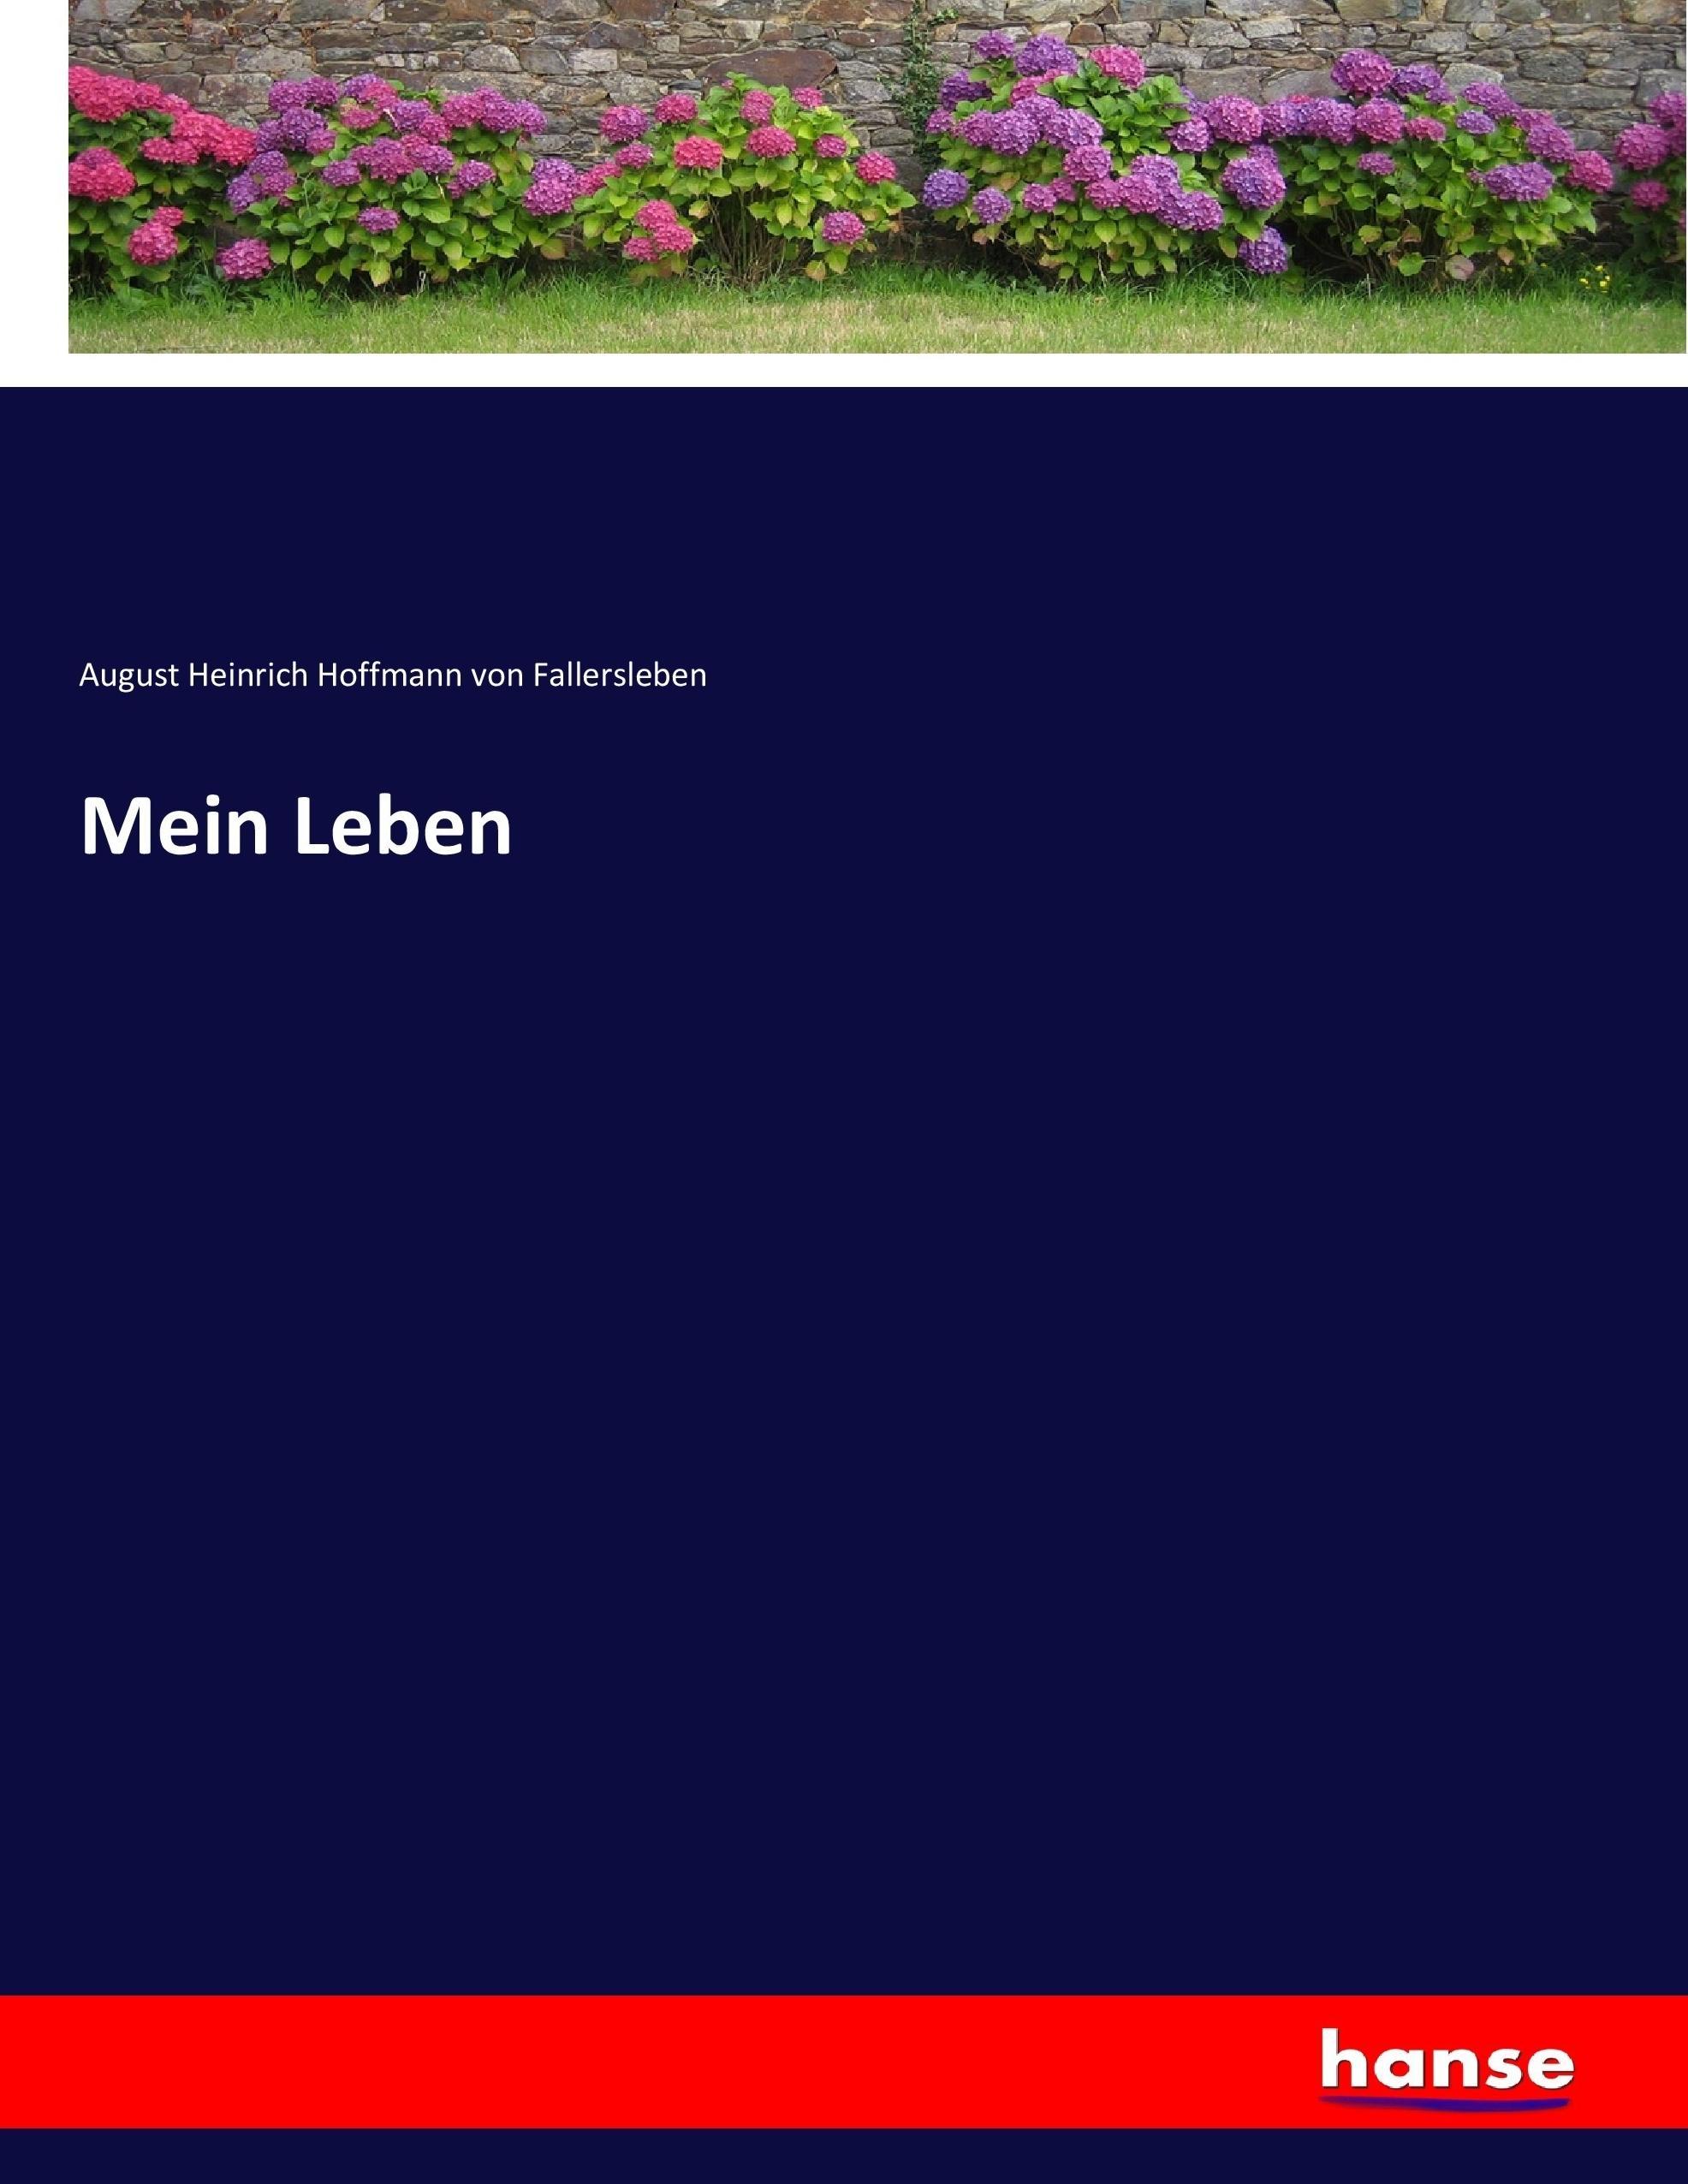 Mein Leben - Hoffmann von Fallersleben, August Heinrich